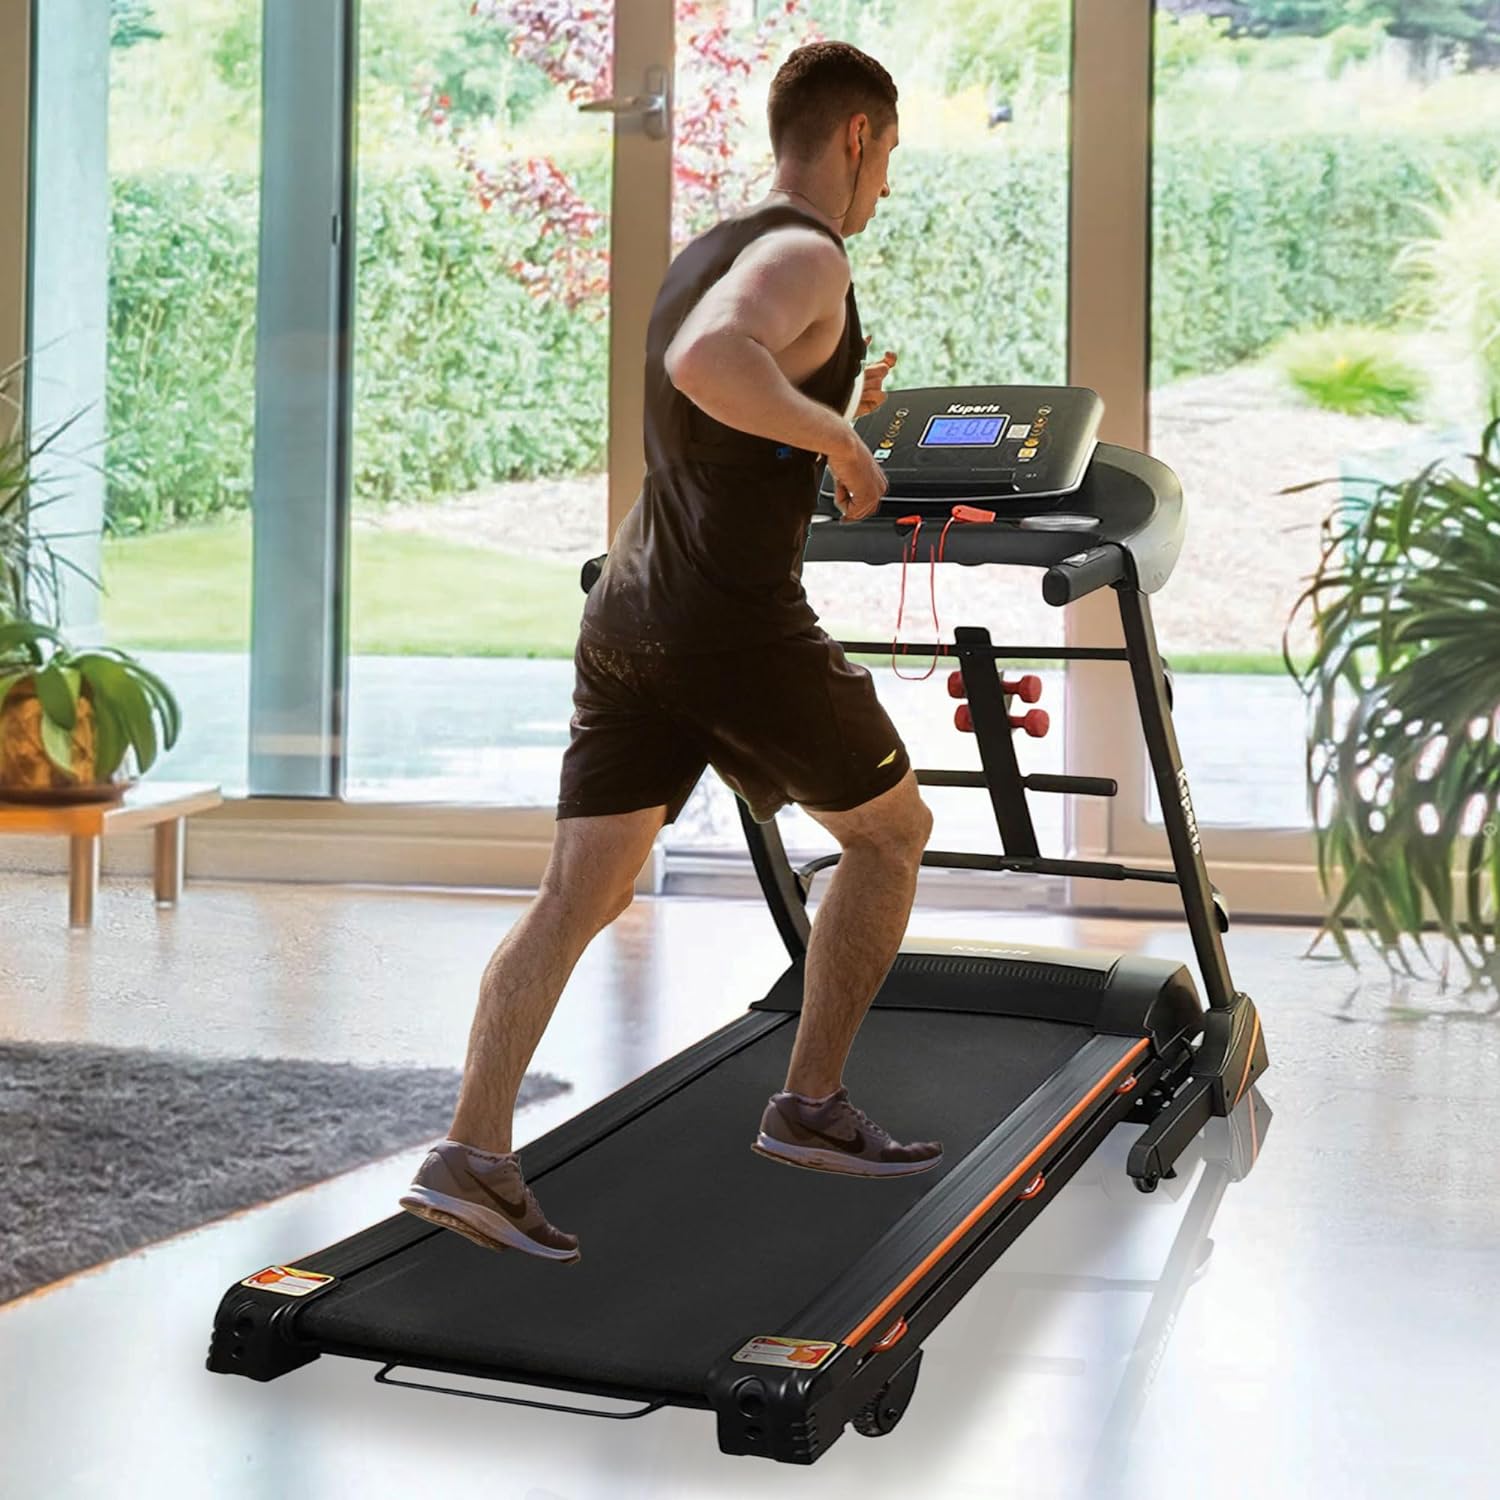 Ksports Multi-functional Treadmill Bundle - Model LJJ1001  (2.5HP/Max: 308lbs)